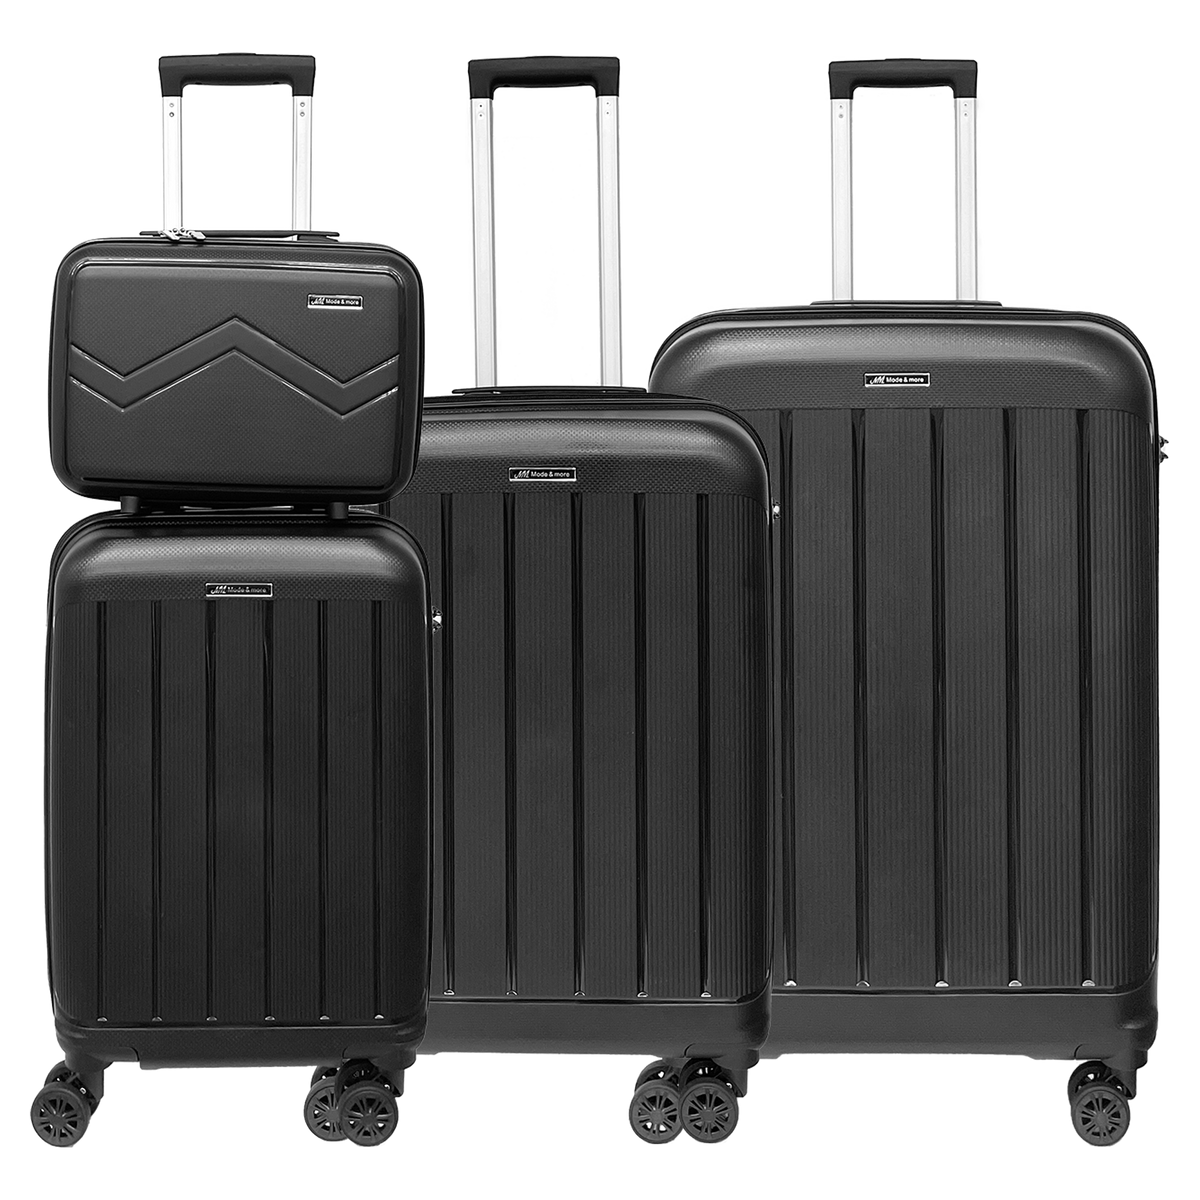 Zestaw 4 walizek z miękkiego polipropylenu, lekkich, z zamkiem TSA, wysokiej jakości i bardzo lekkich, z kosmetyczką